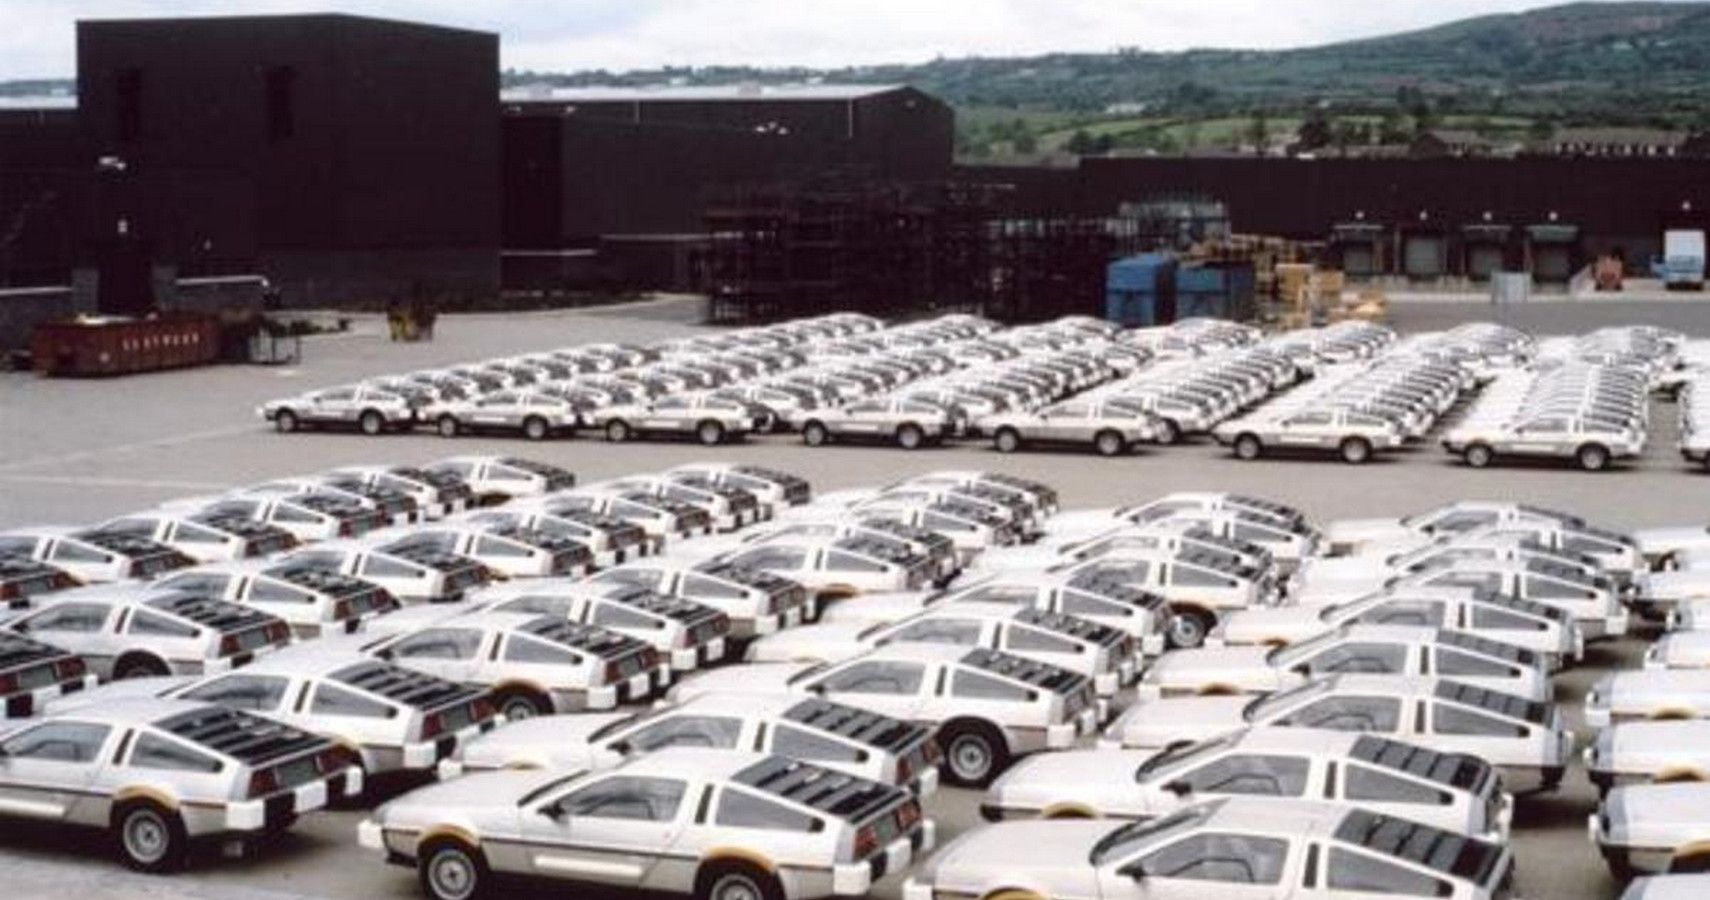 DeLorean Factory